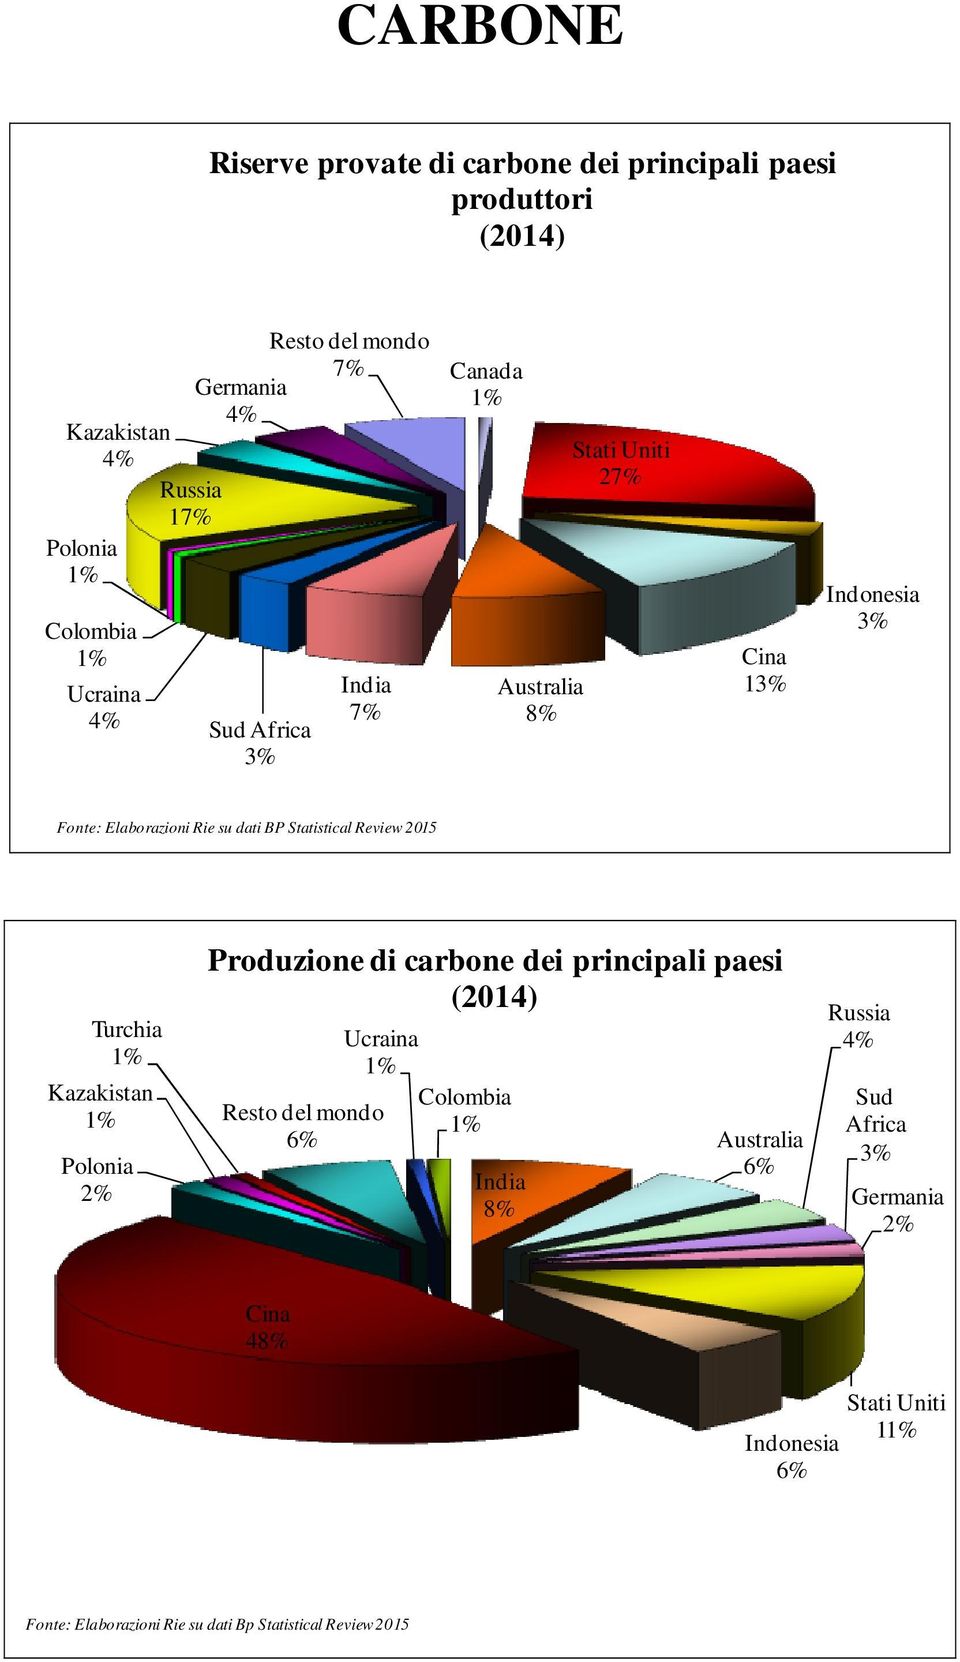 Statistical Review 215 Turchia Kazakistan Polonia Produzione di carbone dei principali paesi (214) Ucraina Resto del mondo 6% Colombia